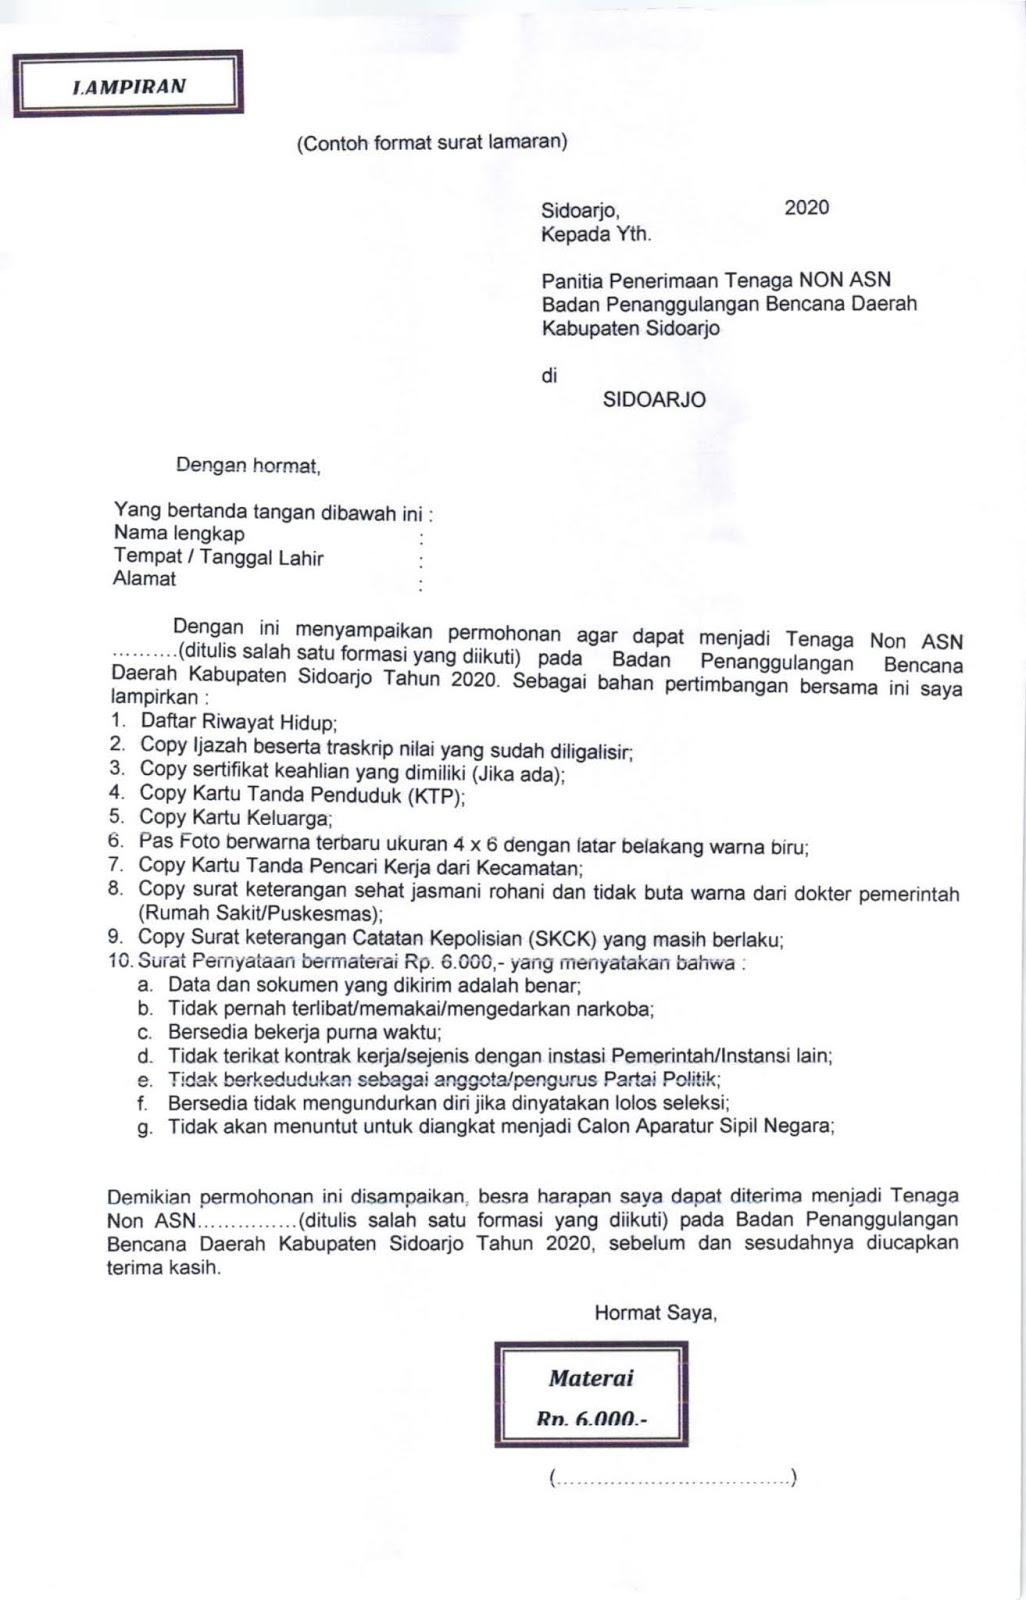 Contoh Surat Lamaran Kabupaten Sidoarjo 2019